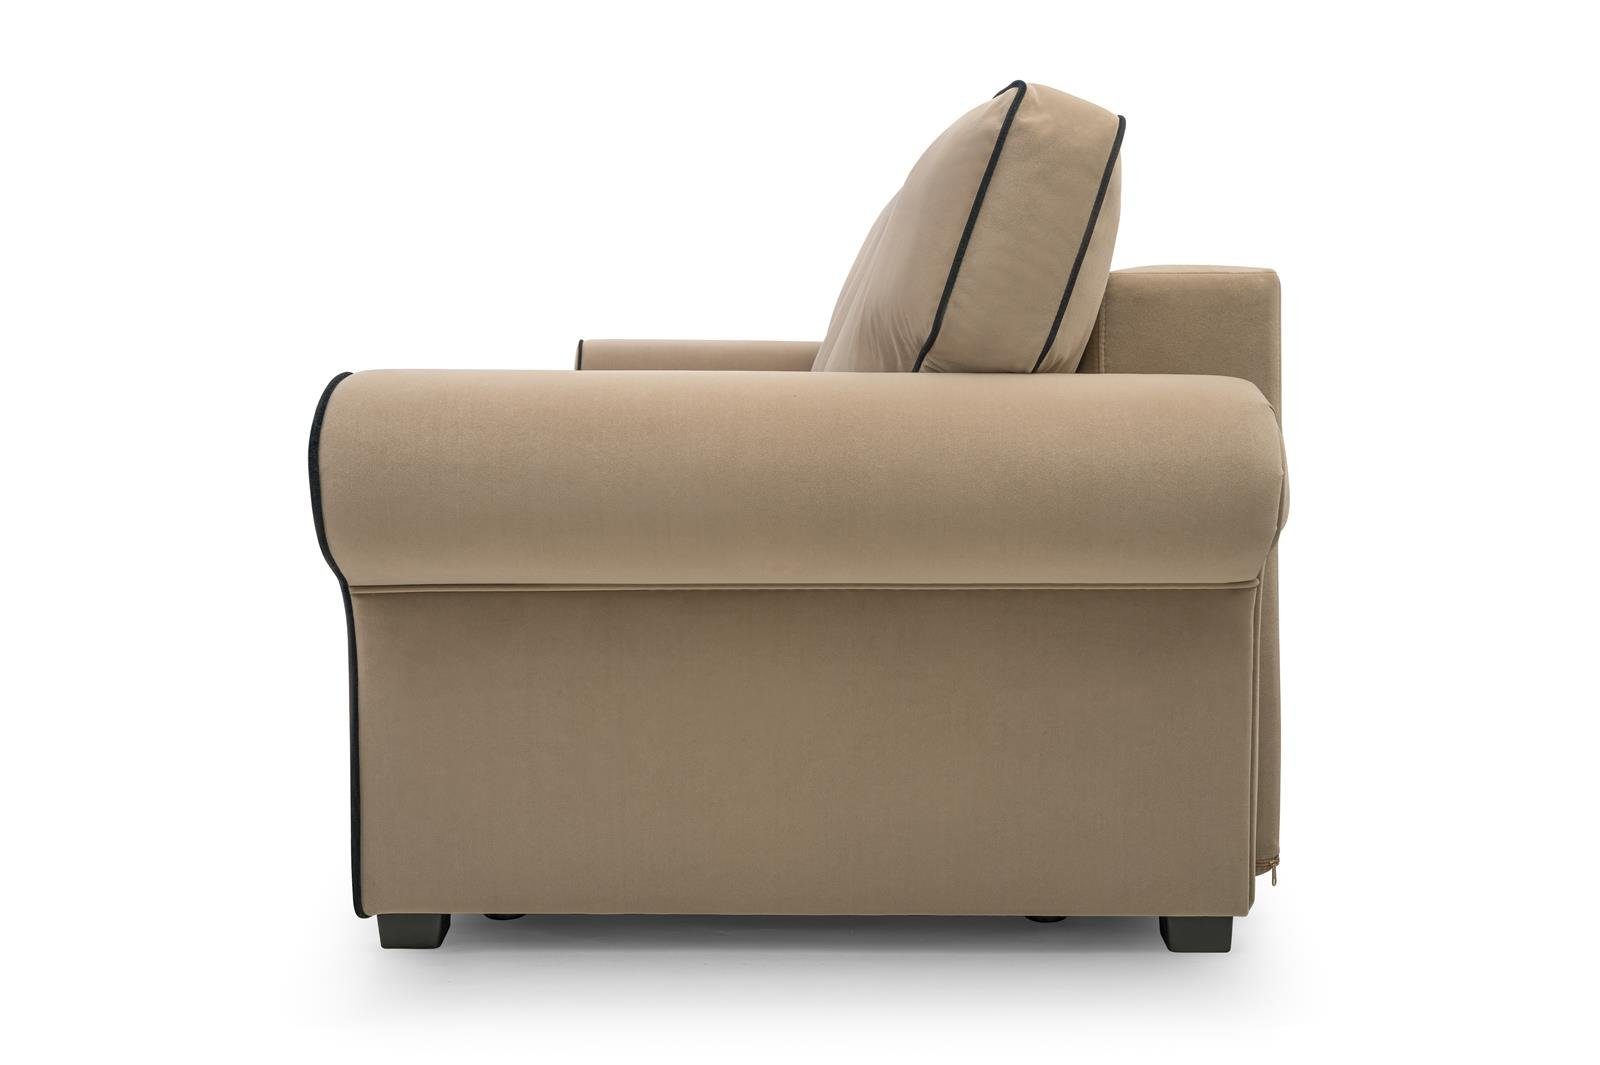 Beautysofa 3-Sitzer BELLO, in für Bettkasten, (mattvelvet 99) Hellbraun 09 Sofa Retro-Stil, aus Dreisitzer Wellenfedern, Wohnzimmer, Veloursstoff, Schlaffunktion + inklusive